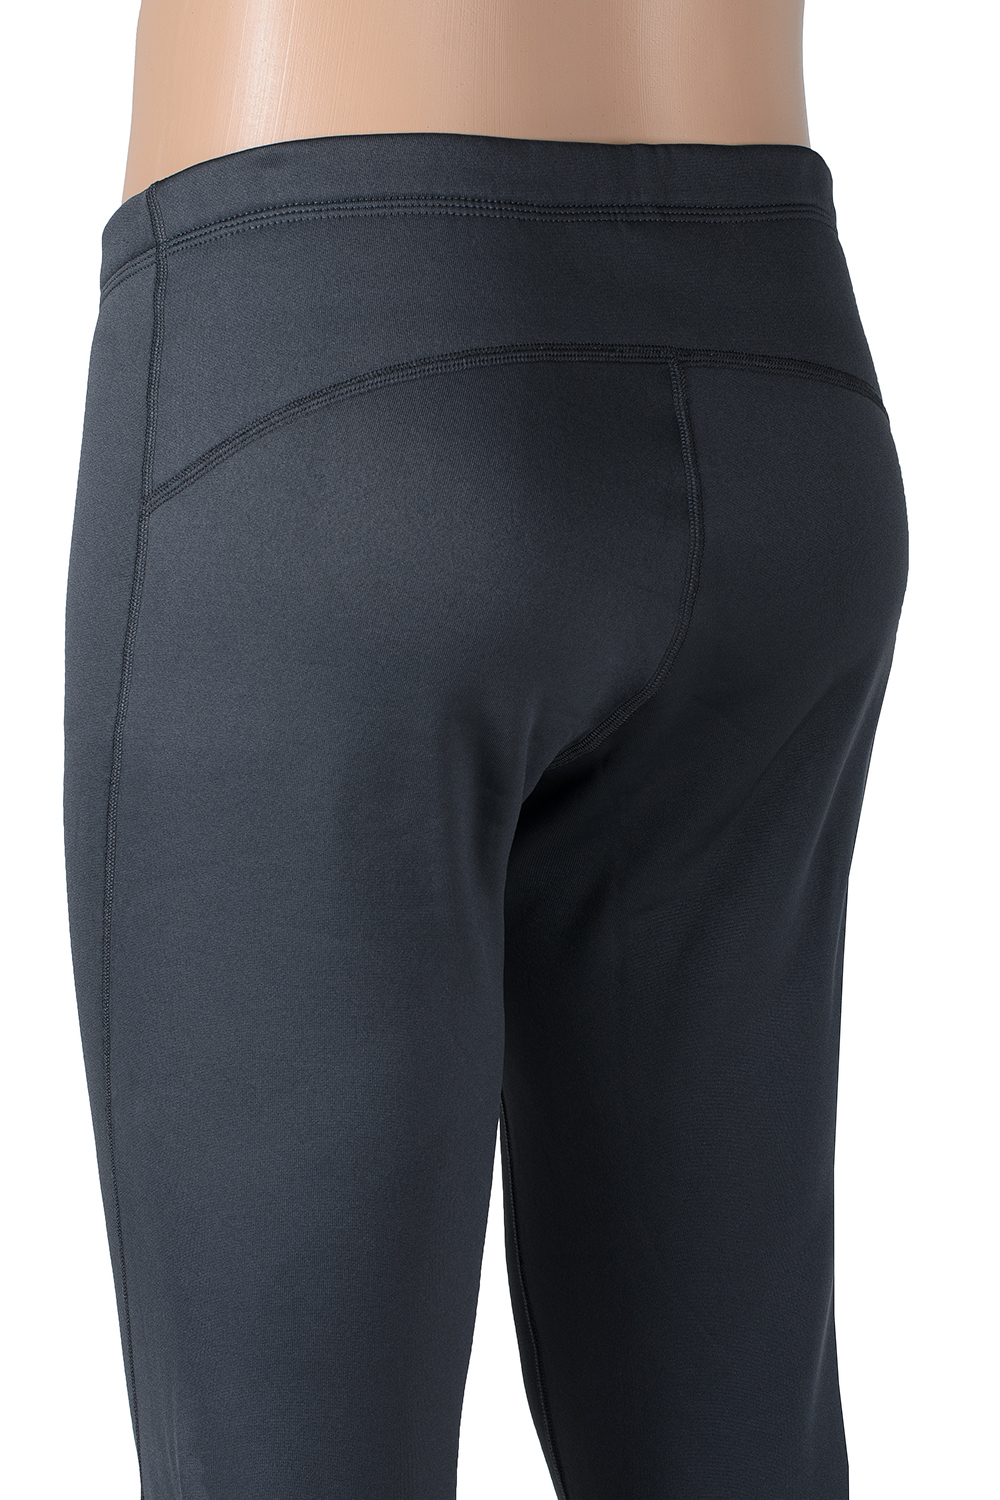 Мягкие и теплые брюки термобелье Draft купить в магазине спортивной одежды O3 Ozone